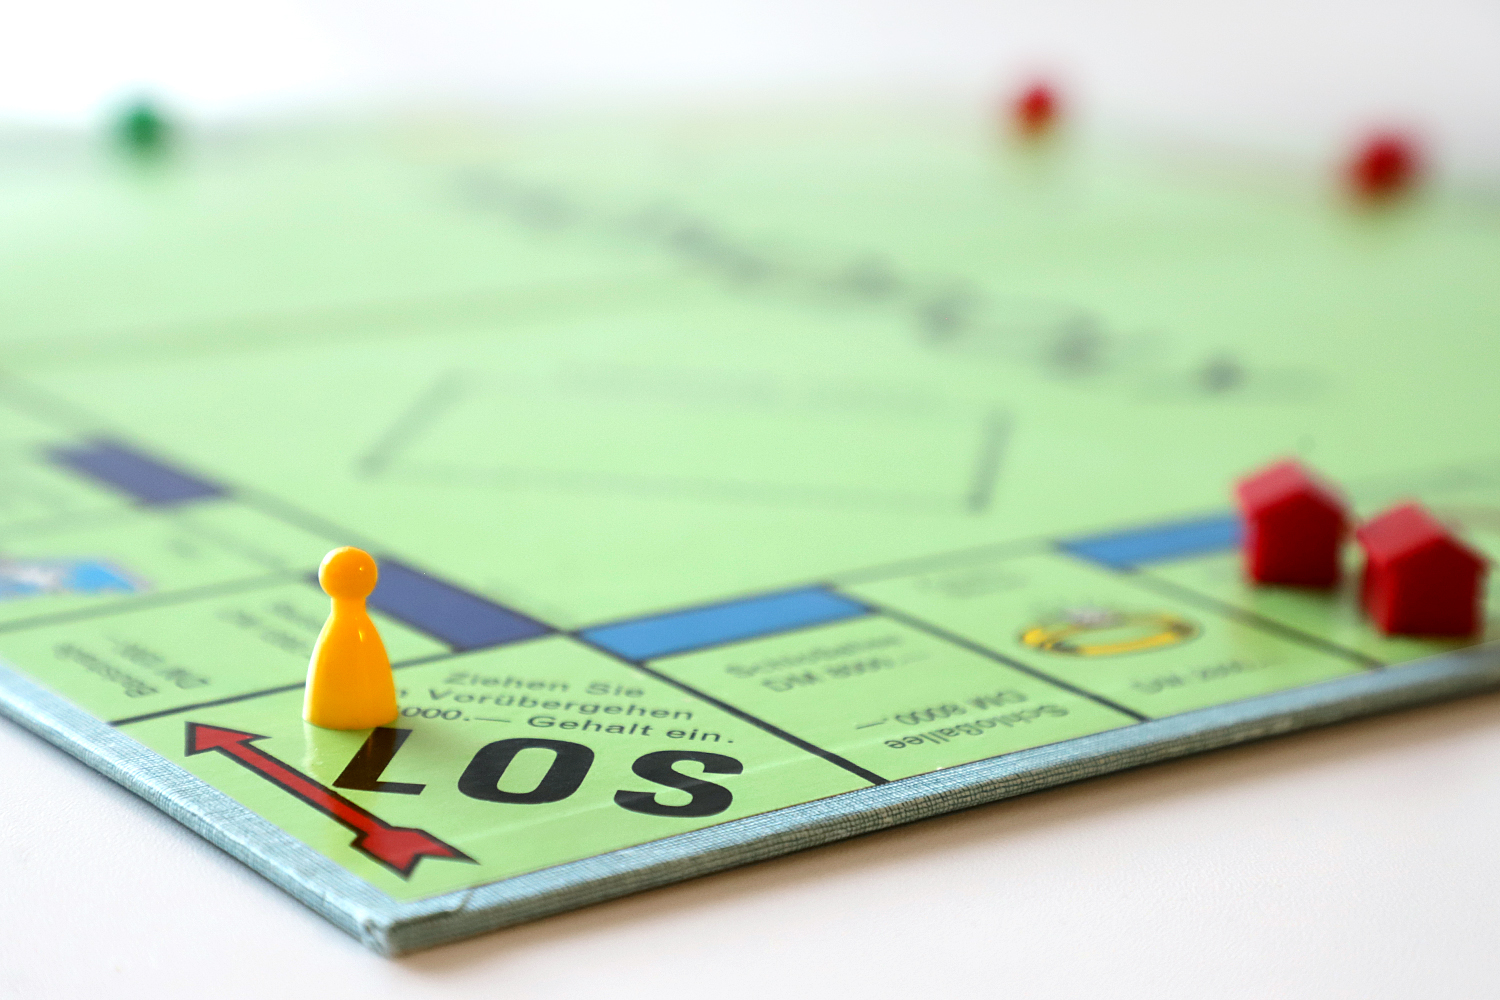 Auf "Los" beim Monopoly-Spiel